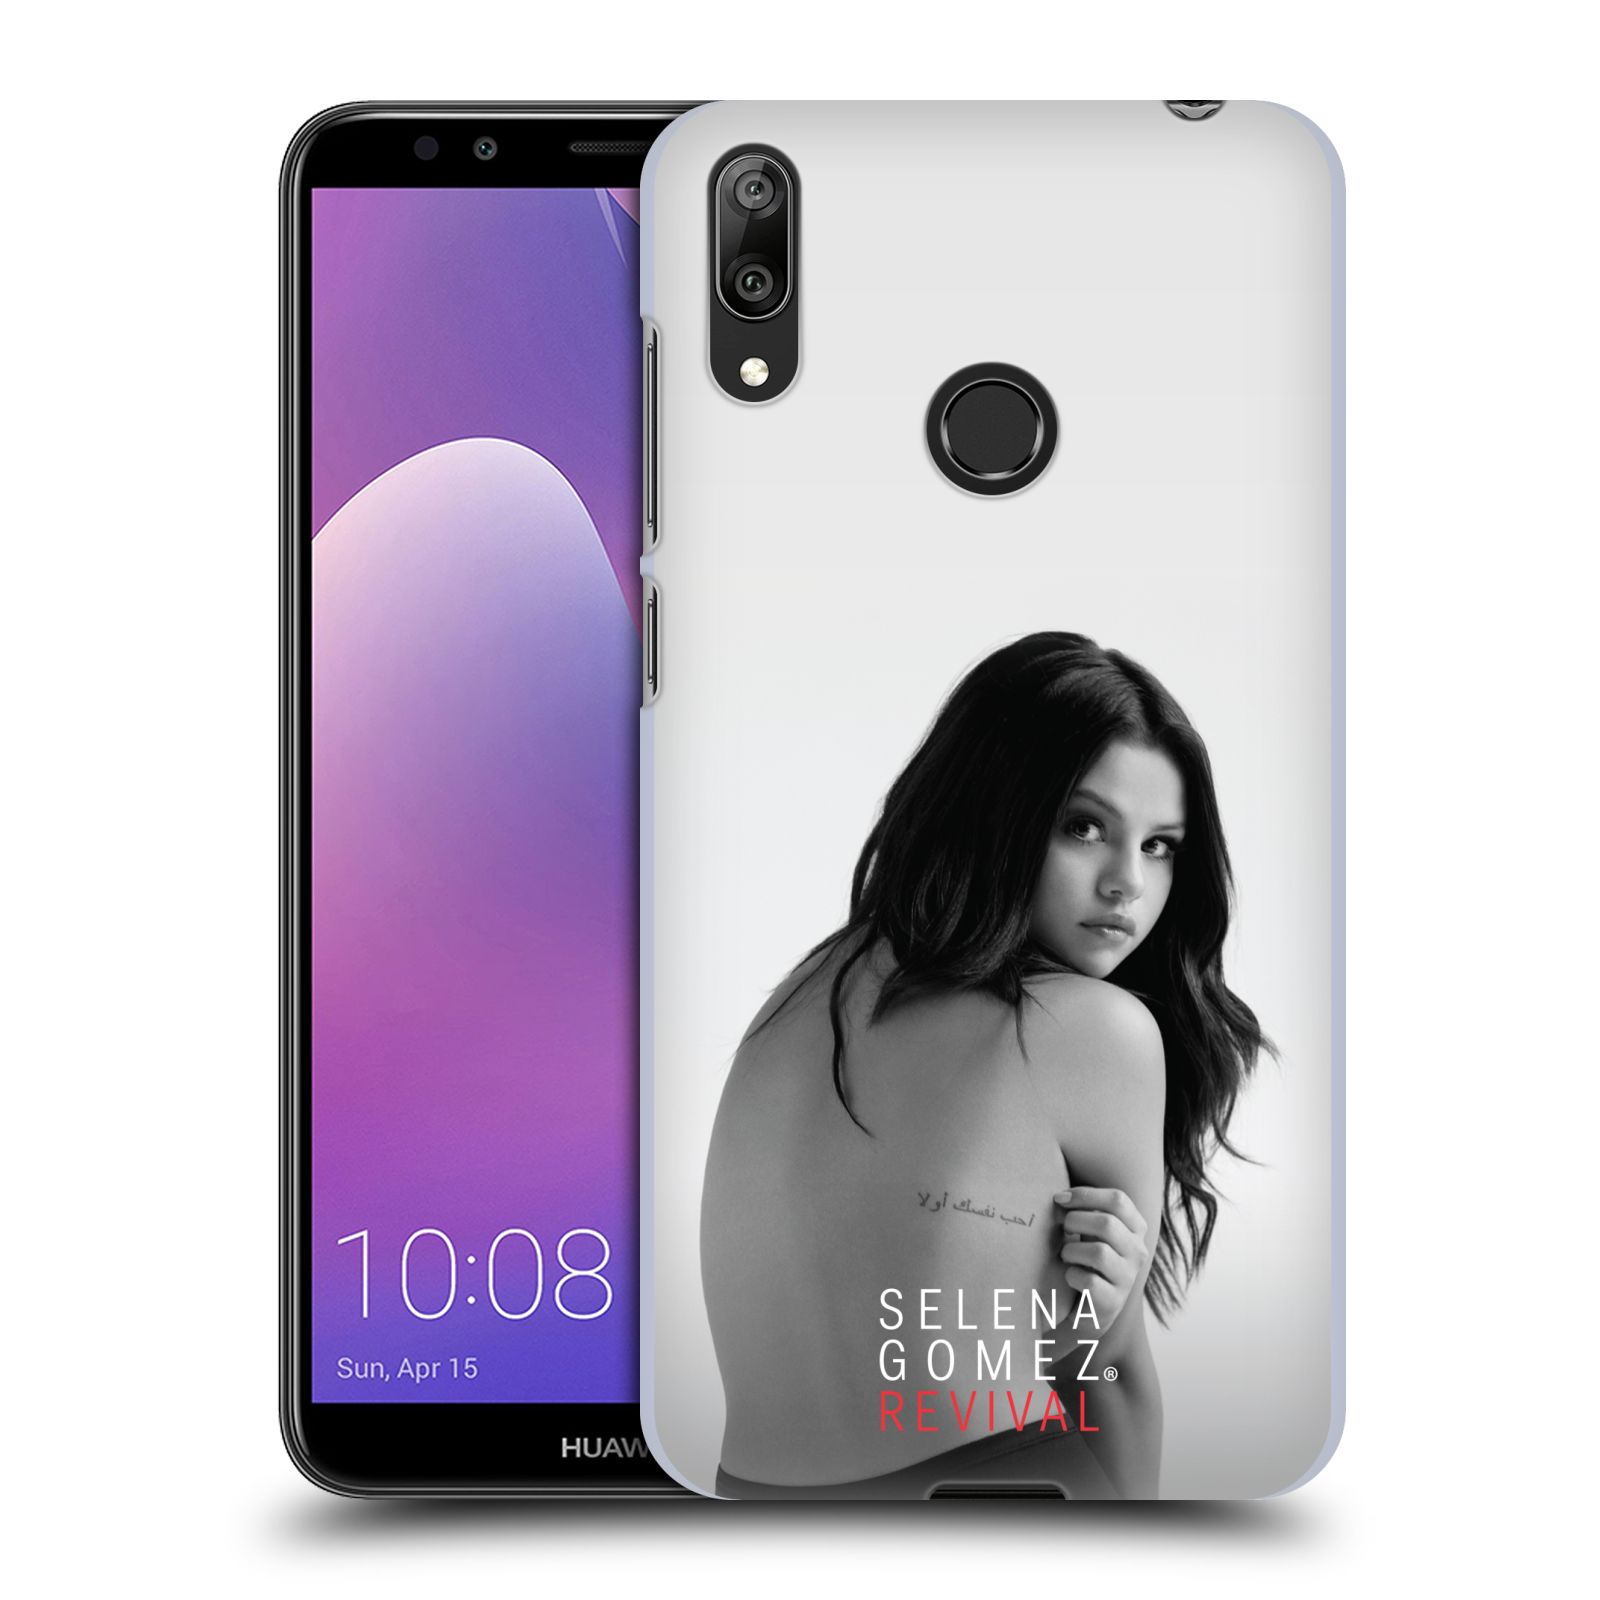 Pouzdro na mobil Huawei Y7 2019 - Head Case - Zpěvačka Selena Gomez foto Revival zadní strana